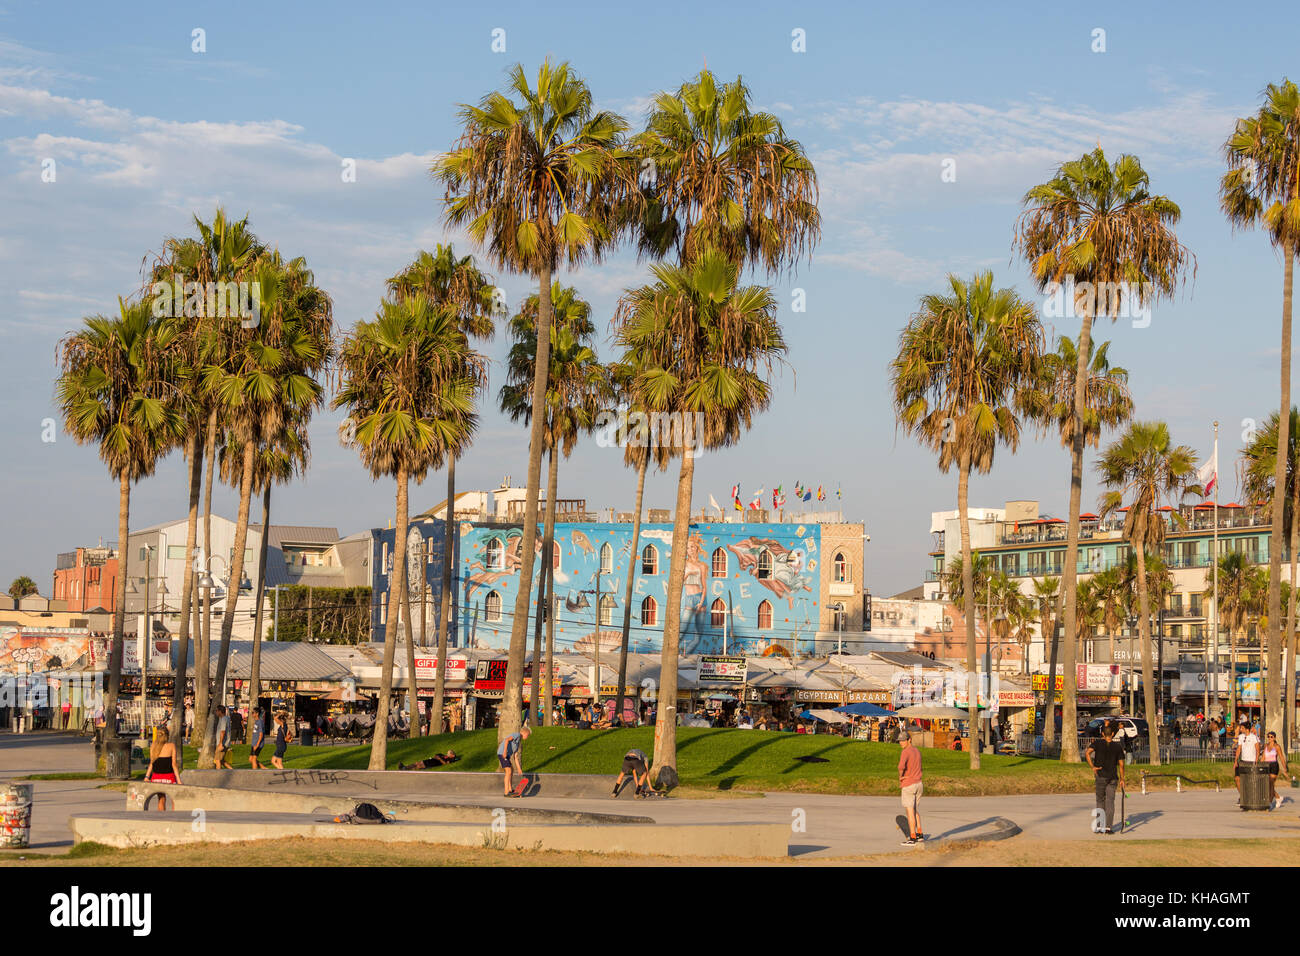 Passeggiata in spiaggia venezia, Los Angeles, california, Stati Uniti d'America Foto Stock